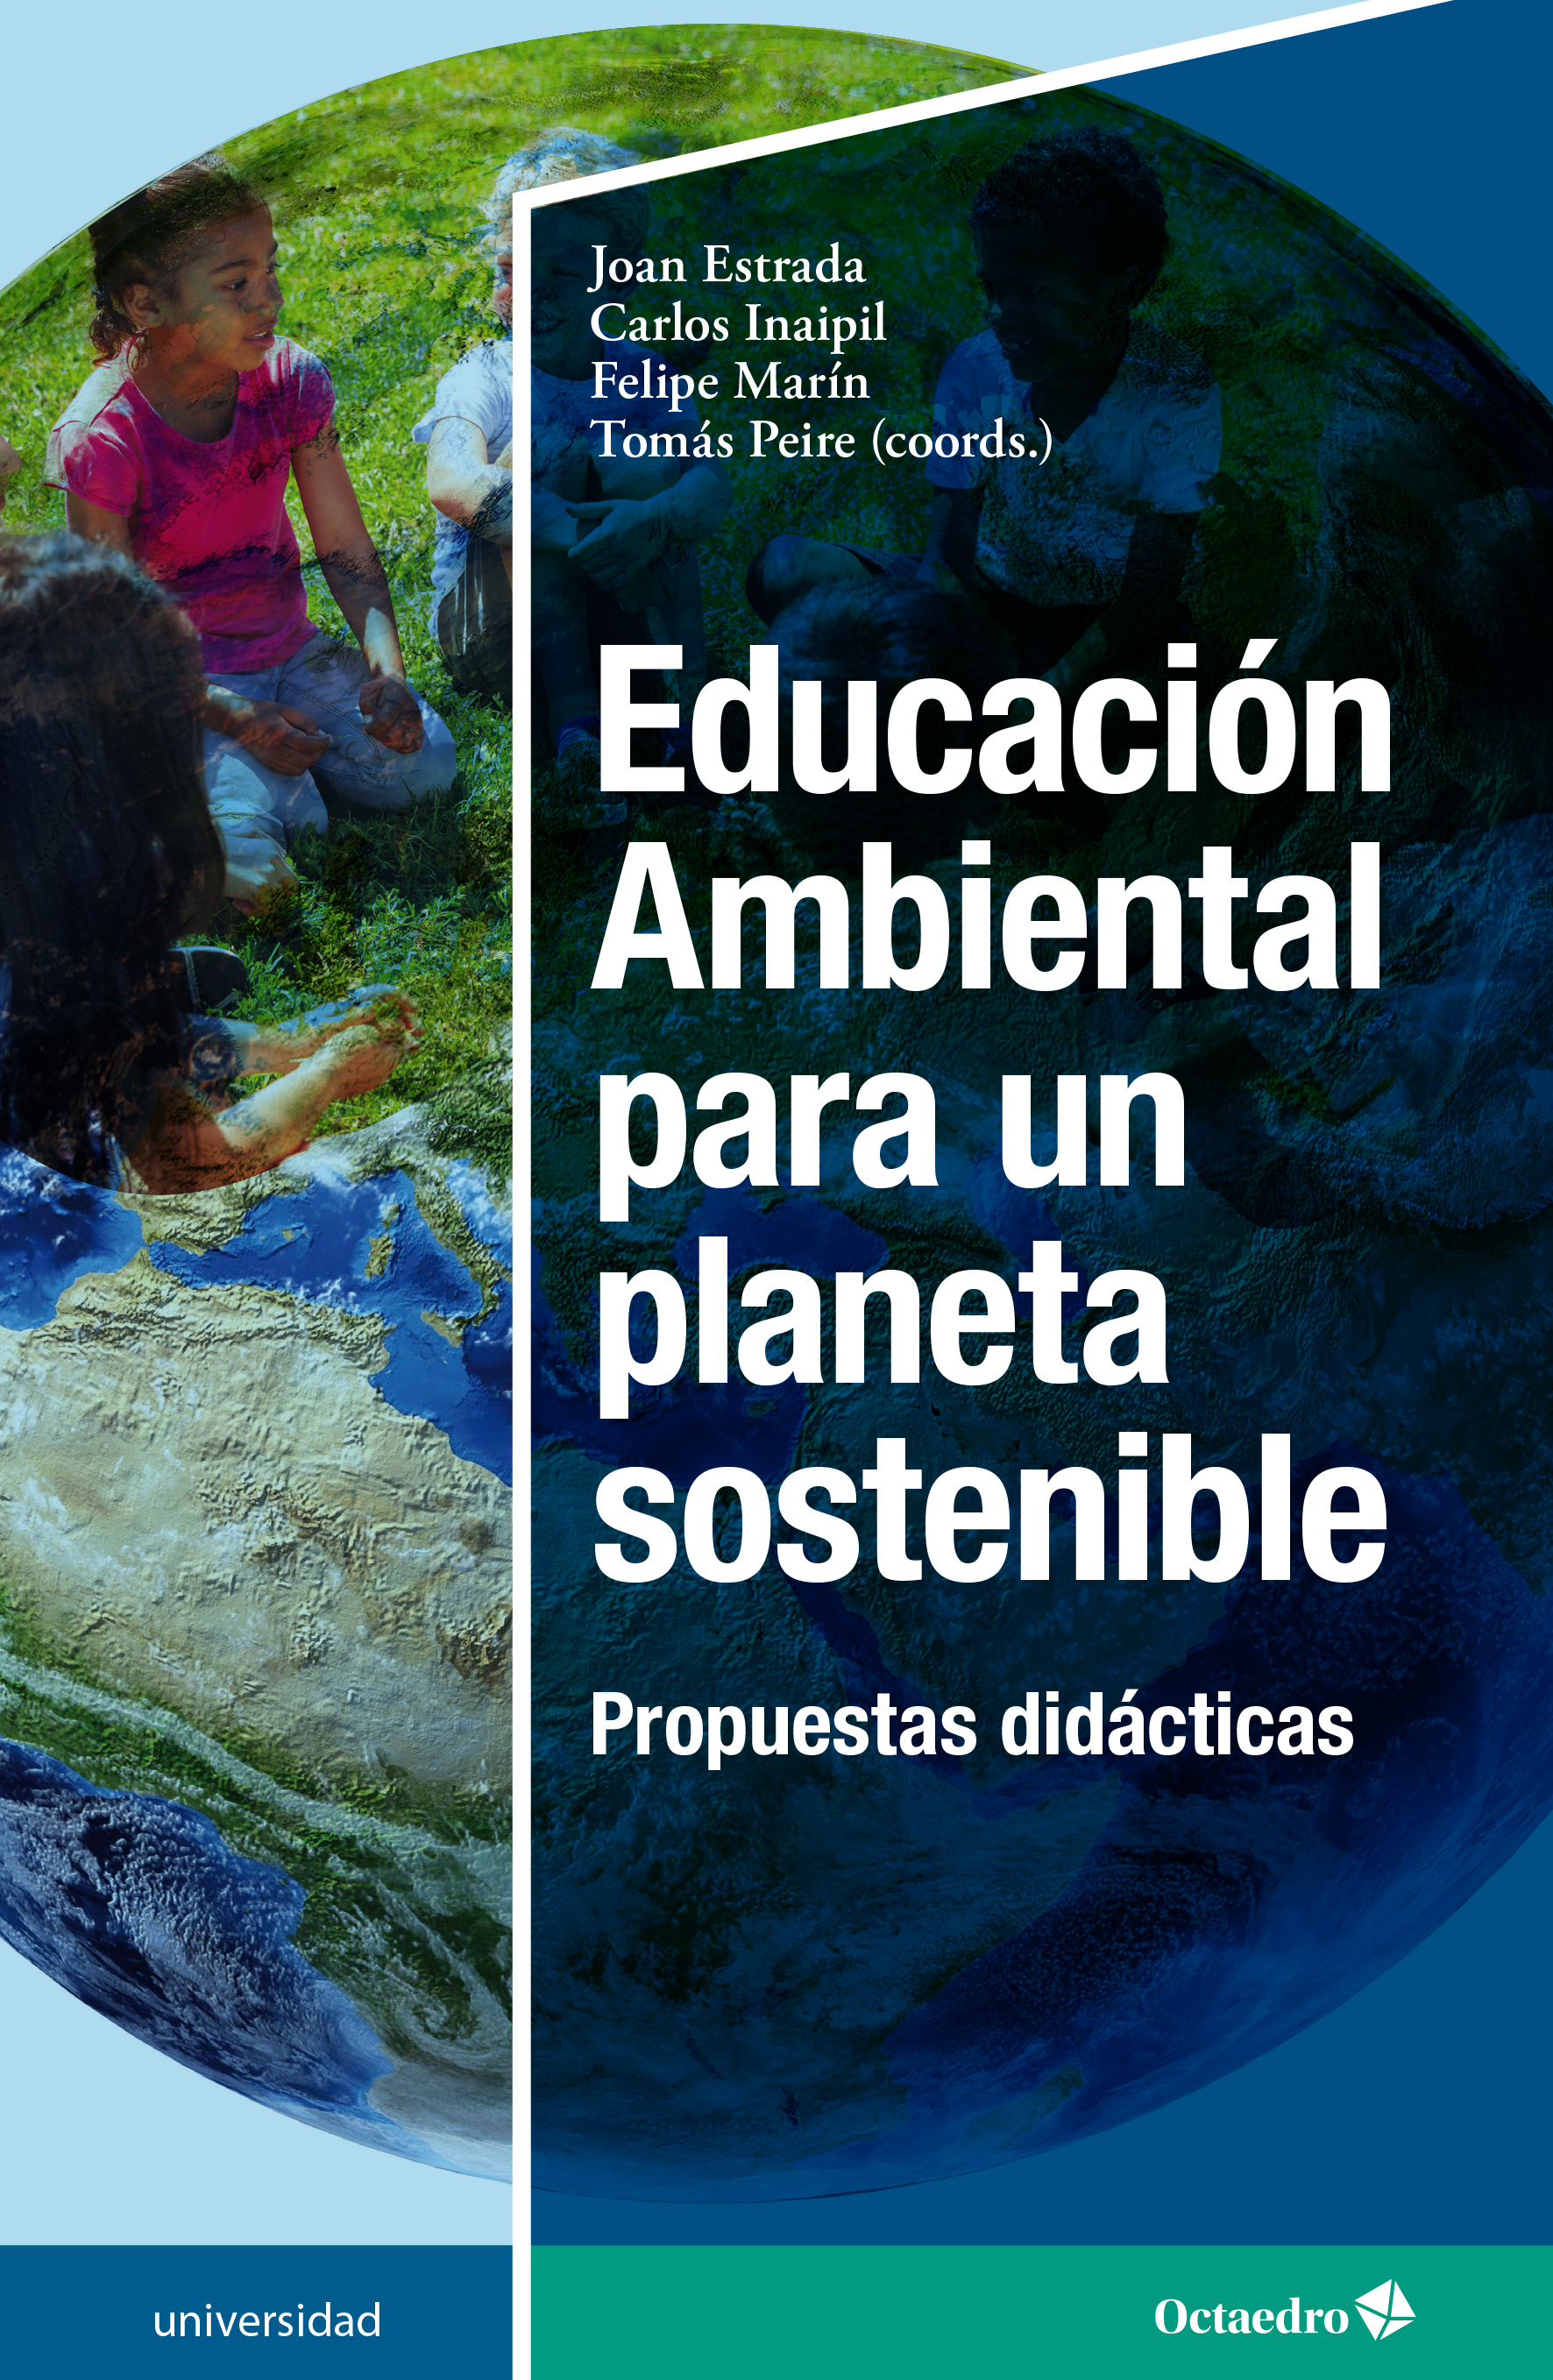 Educación Ambiental para un planeta sostenible. 9788419023575